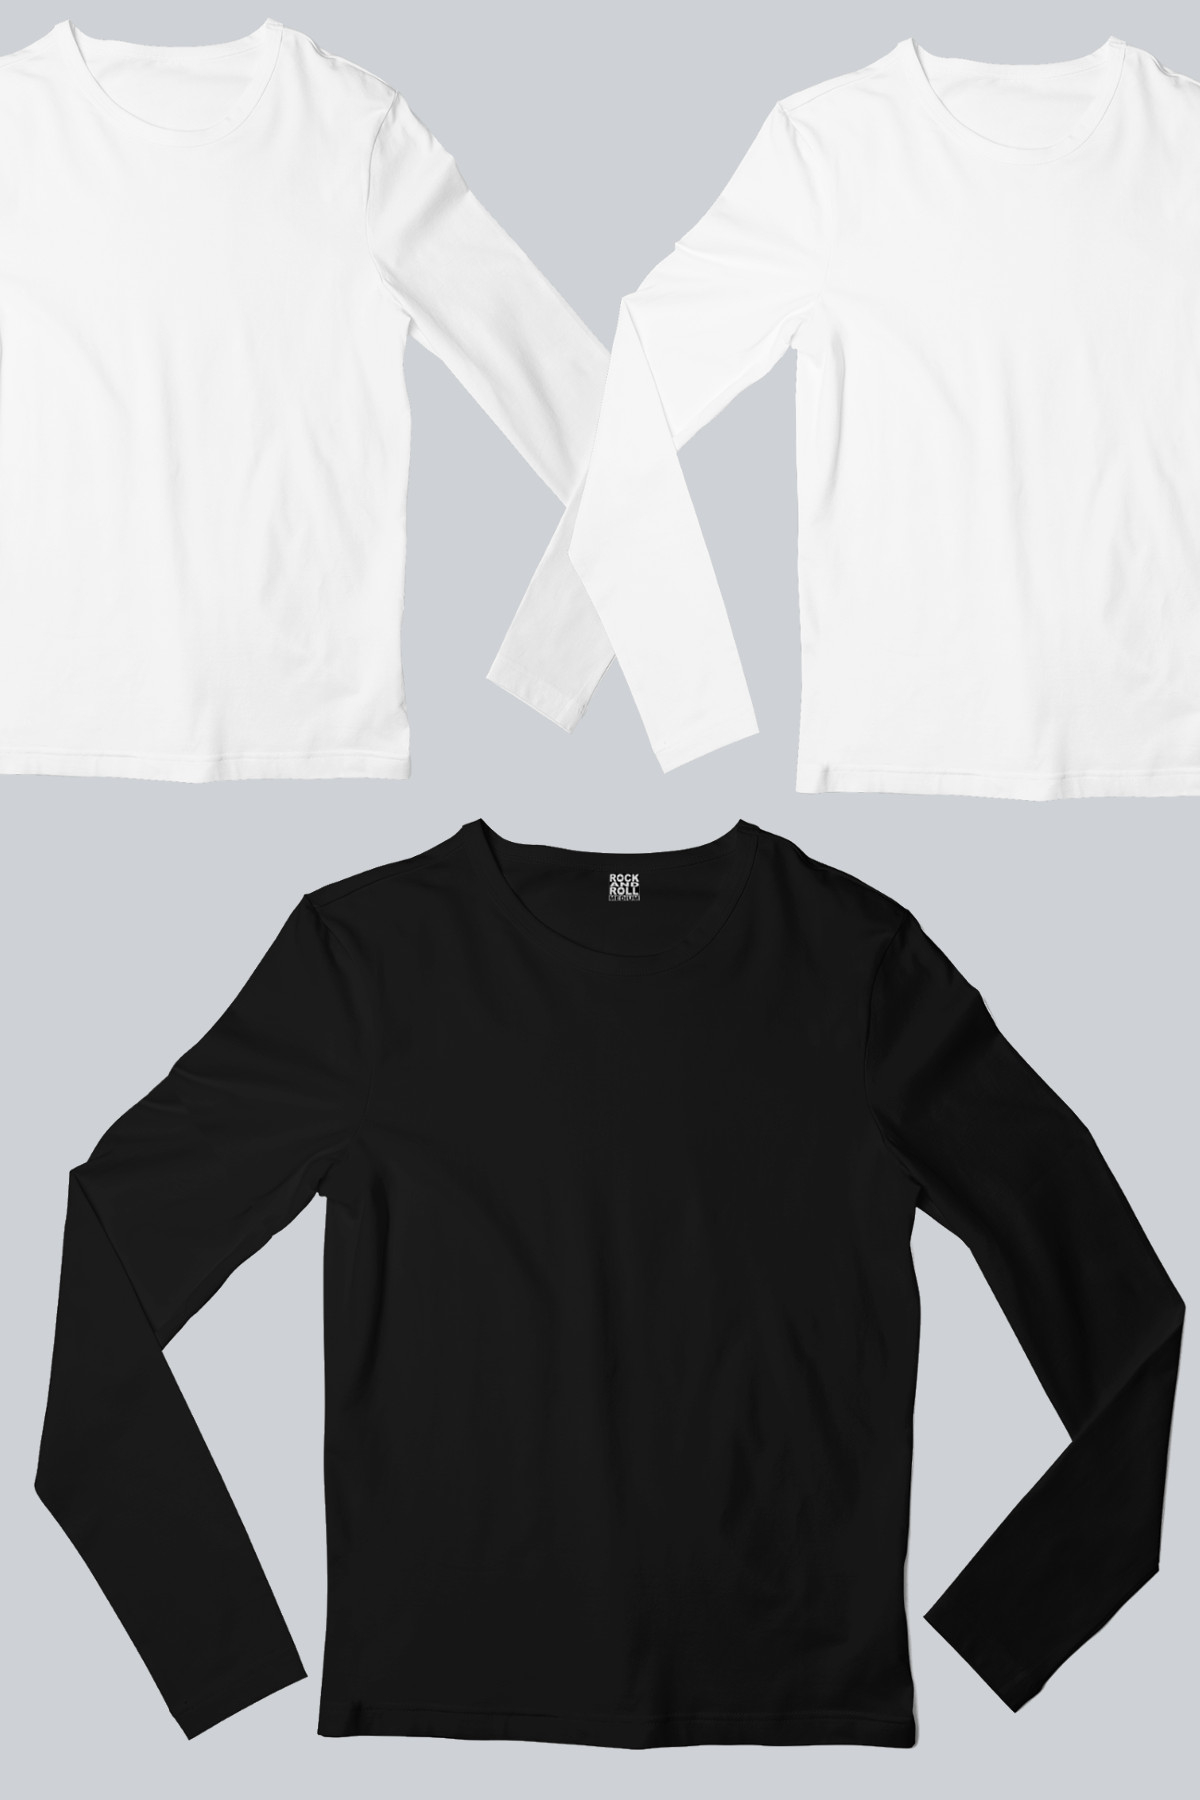 Düz, Baskısız 2 Beyaz, 1 Siyah Uzun Kollu T-shirt Kadın 3'lü Eko Paket